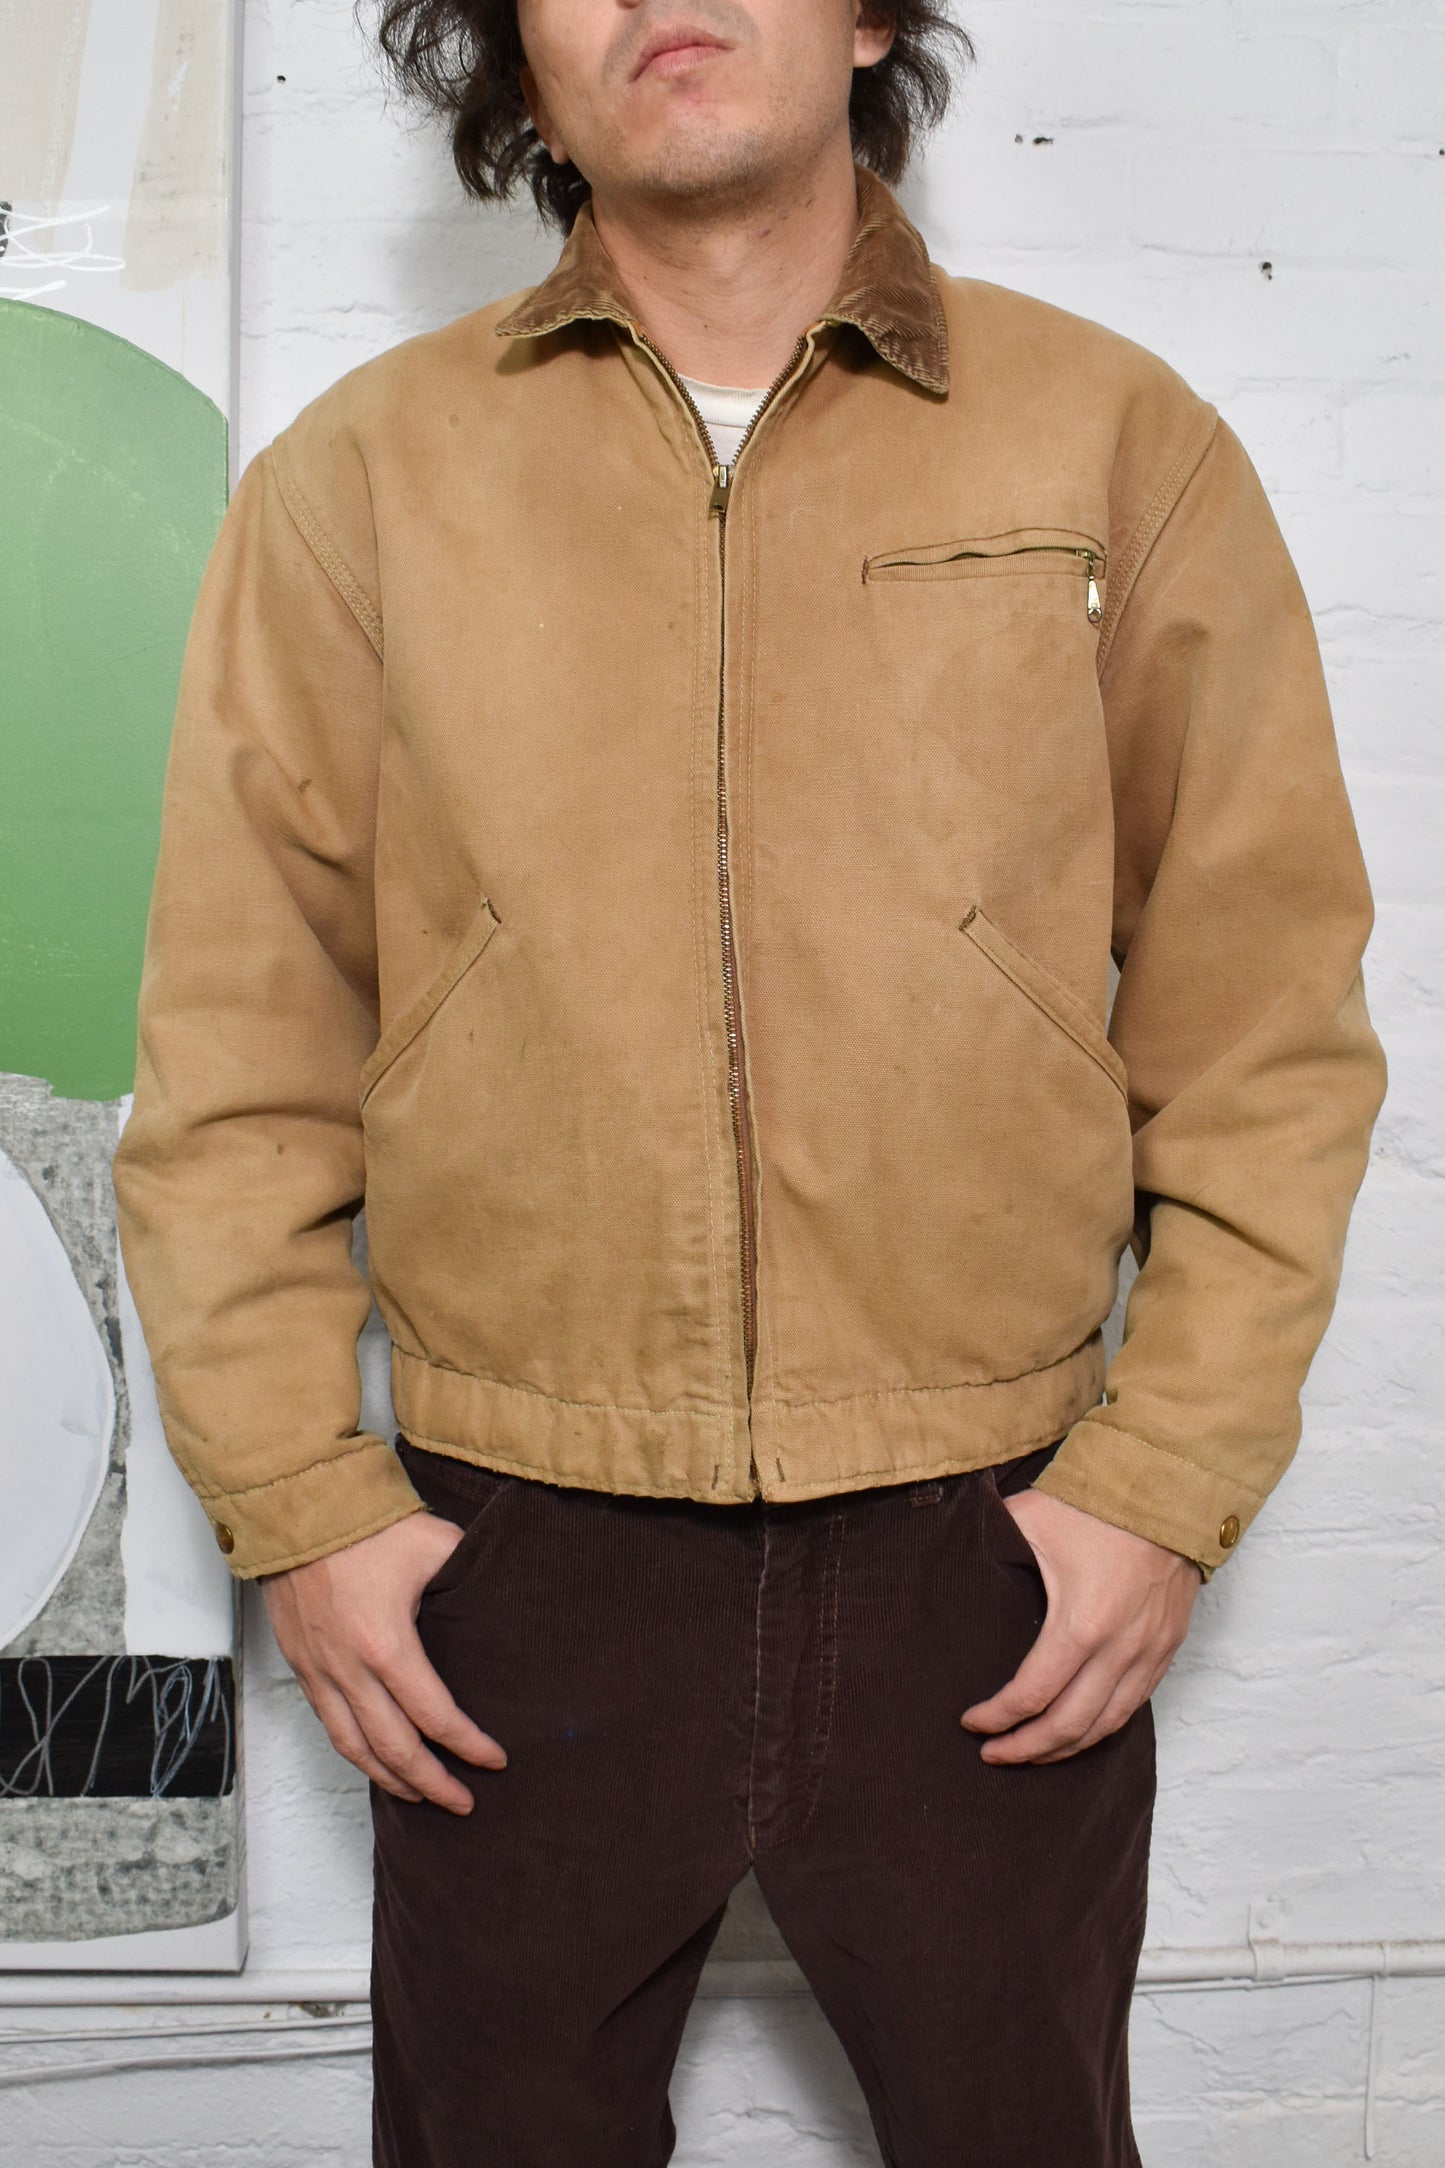 Vintage 1970's "Carhartt" Blanket Lined Jacket